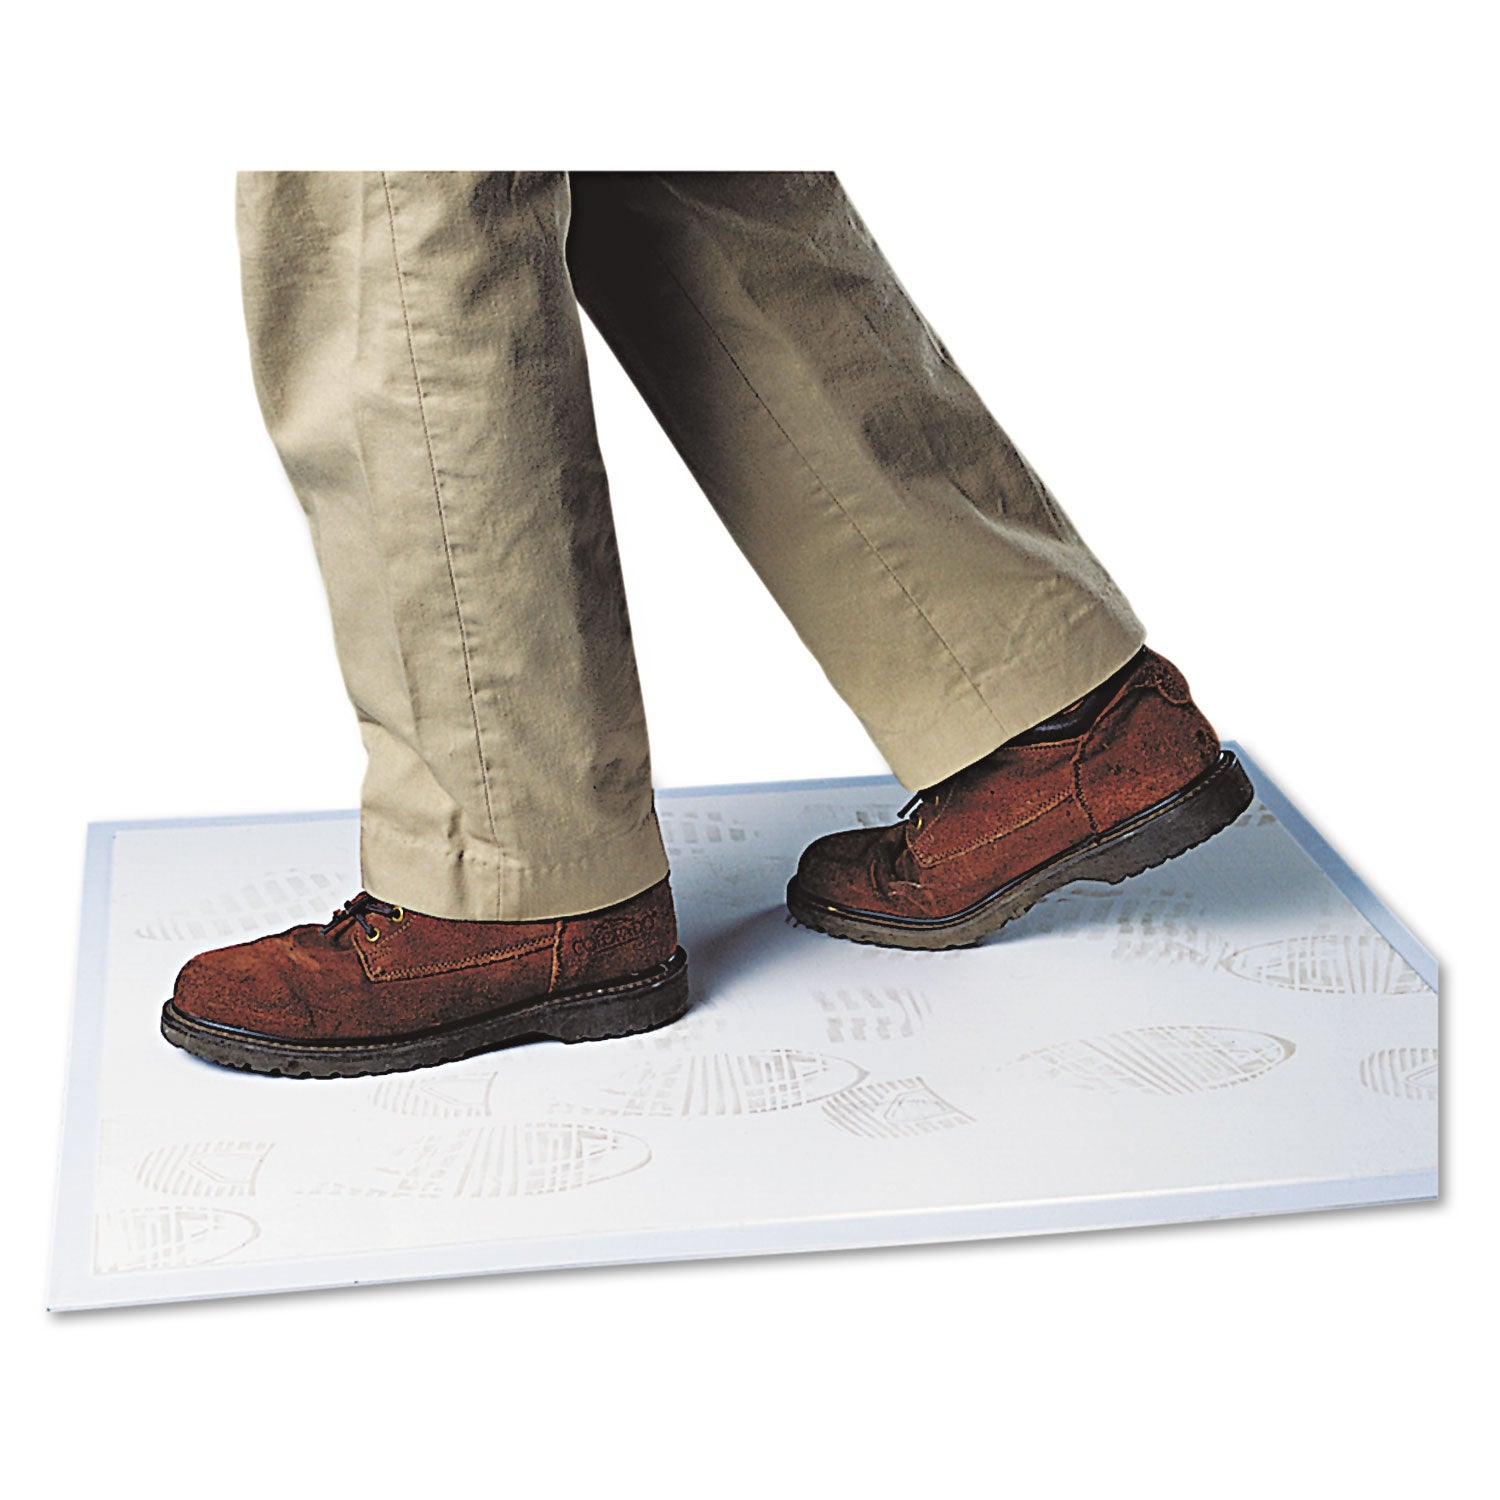 Walk-N-Clean Dirt Grabber Mat with Starter Pad, 31.5 x 25.5, Gray - 